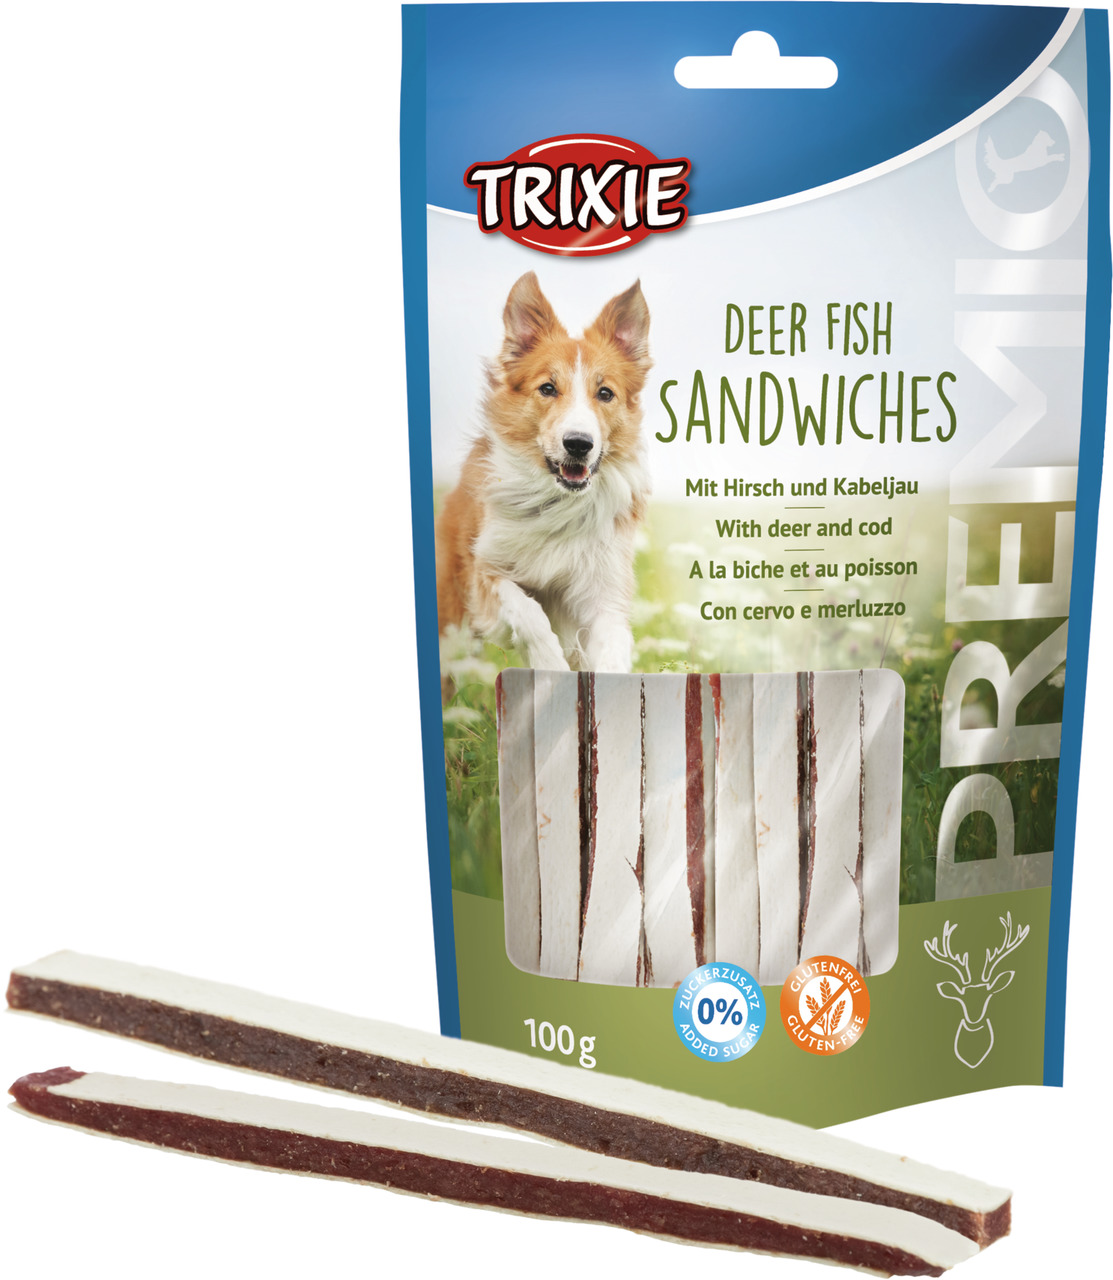 Trixie Premio Deer Fish Sandwiches mit Hirsch und Kabeljau Hunde Snack 100 g